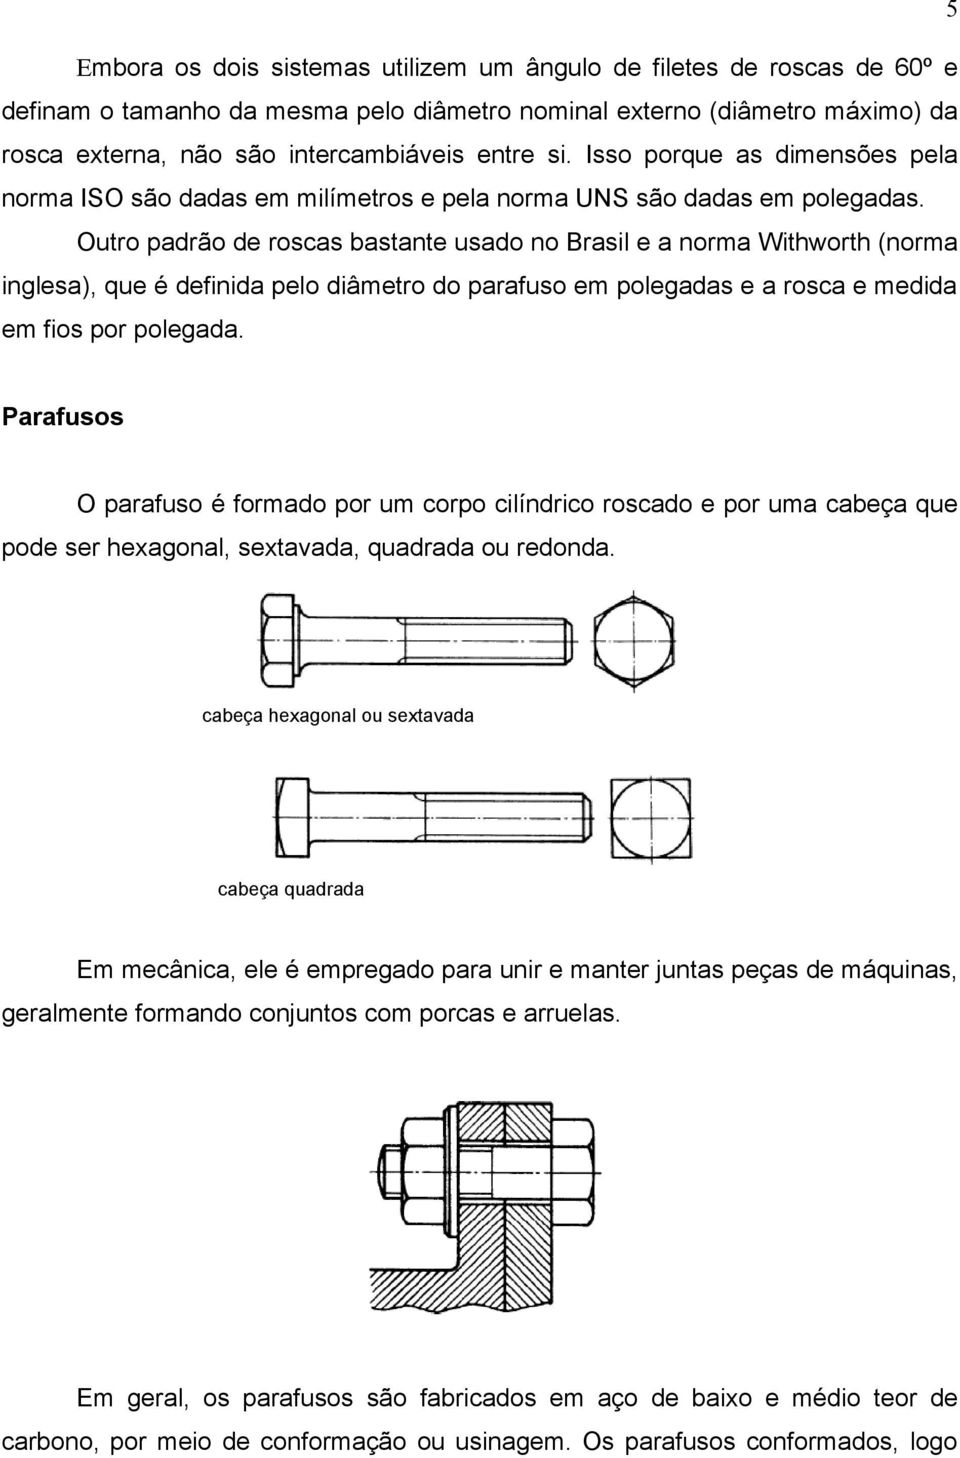 Outro padrão de roscas bastante usado no Brasil e a norma Withworth (norma inglesa), que é definida pelo diâmetro do parafuso em polegadas e a rosca e medida em fios por polegada.